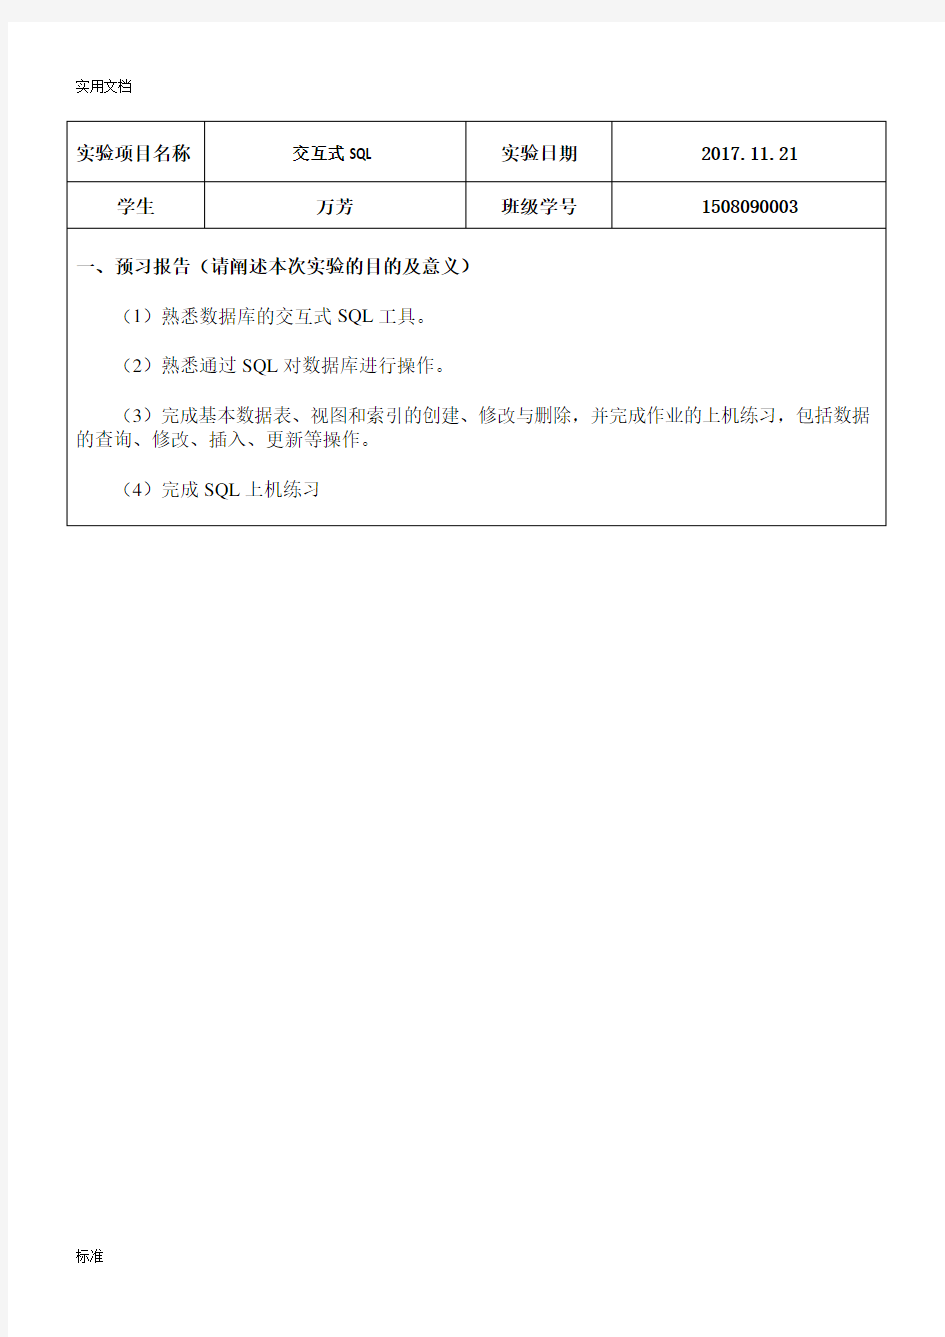 武汉轻工大学大数据库1508090003实验2报告材料